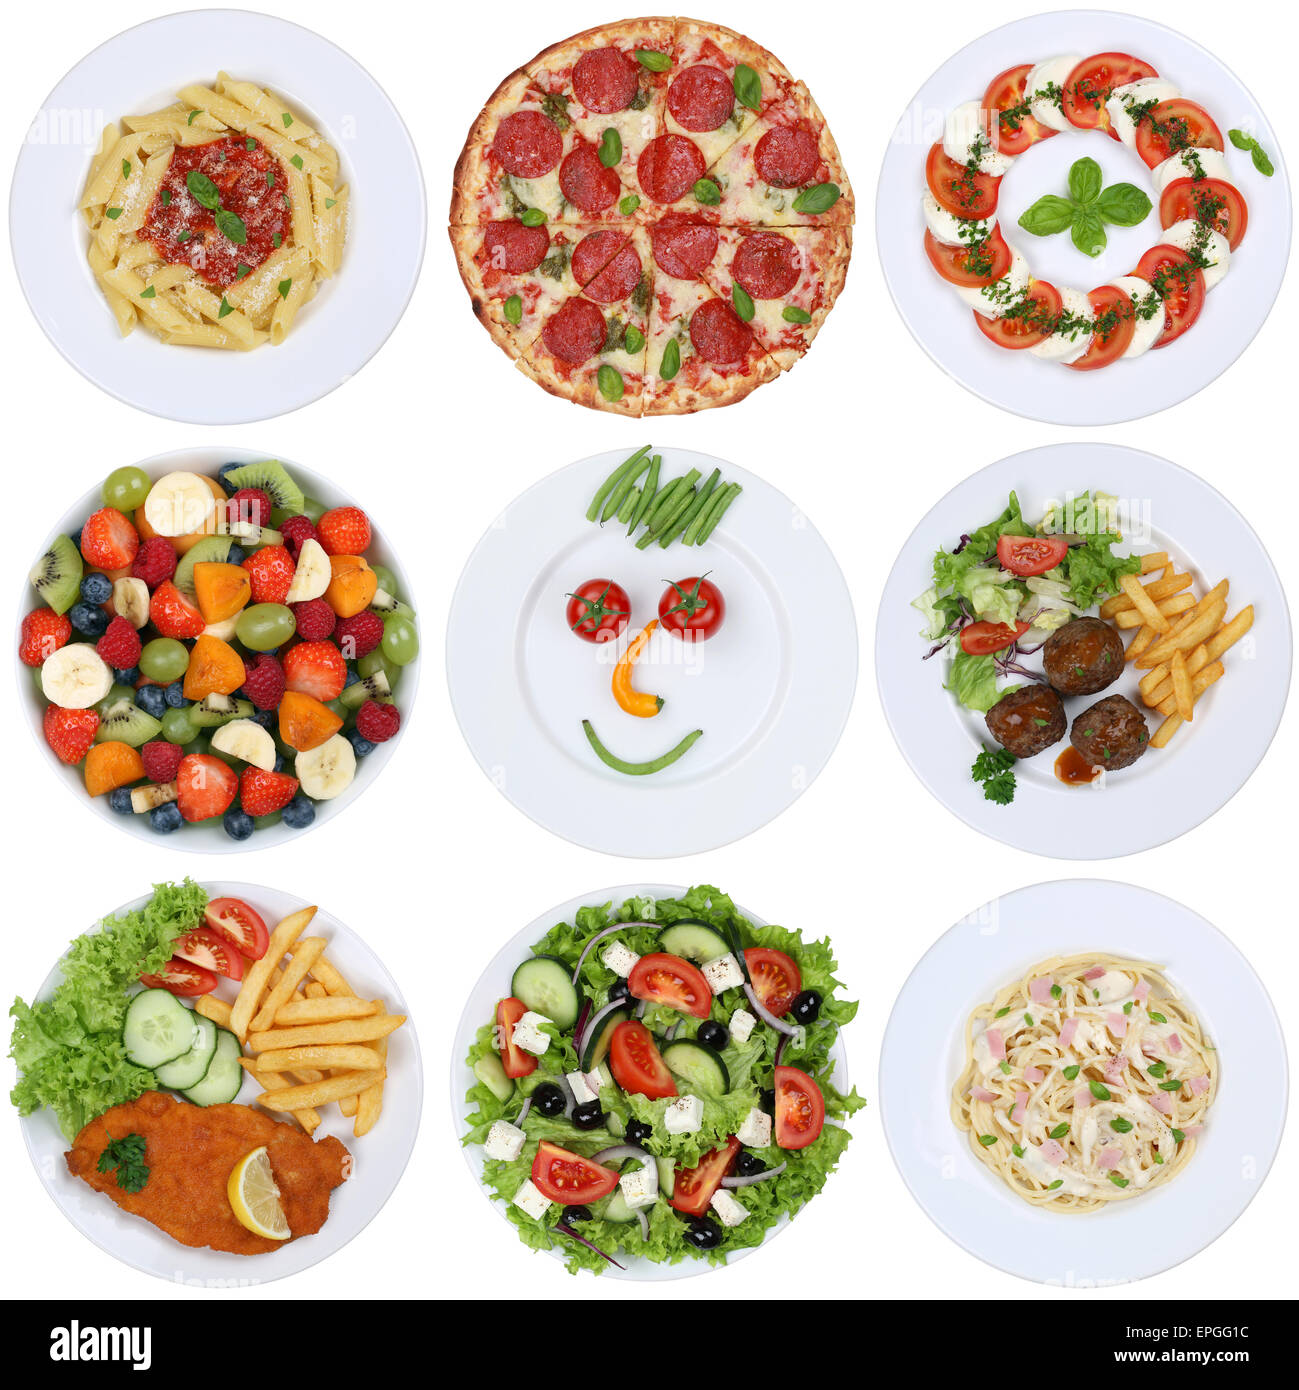 Gerichte Essen Sammlung mit Pizza, Salat, Spaghetti, Pasta und Fleisch Stock Photo